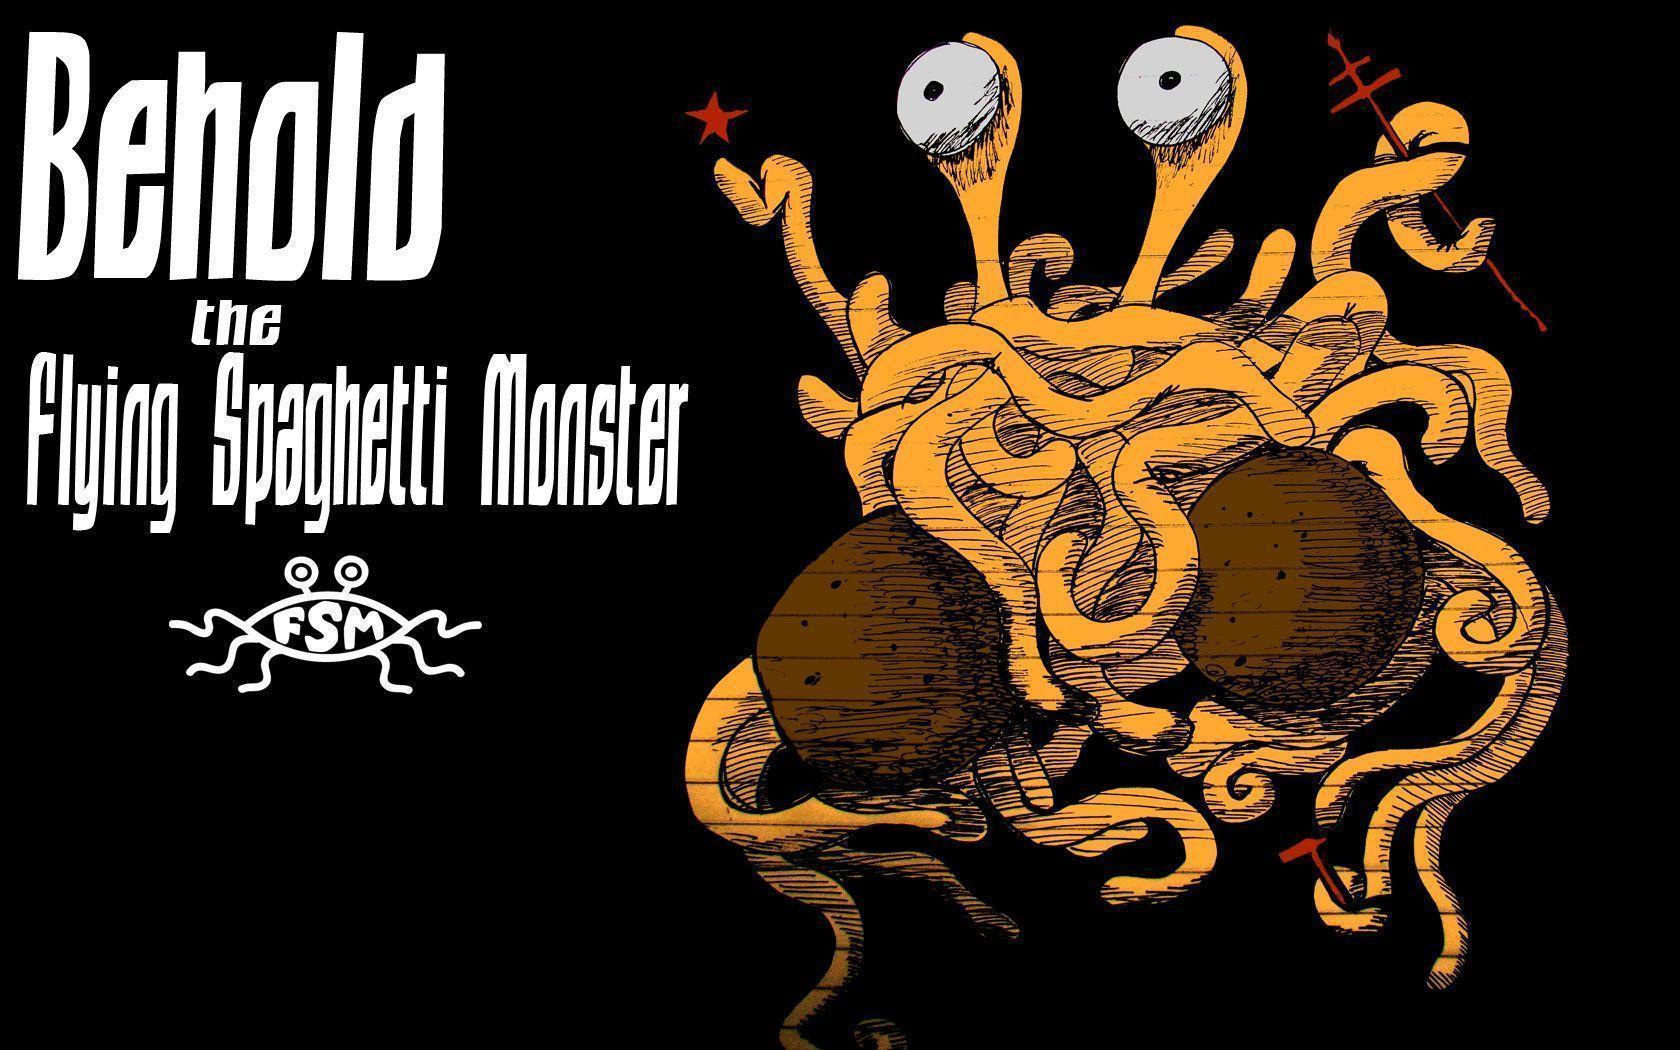 andre&;s wallpaper « Church of the Flying Spaghetti Monster